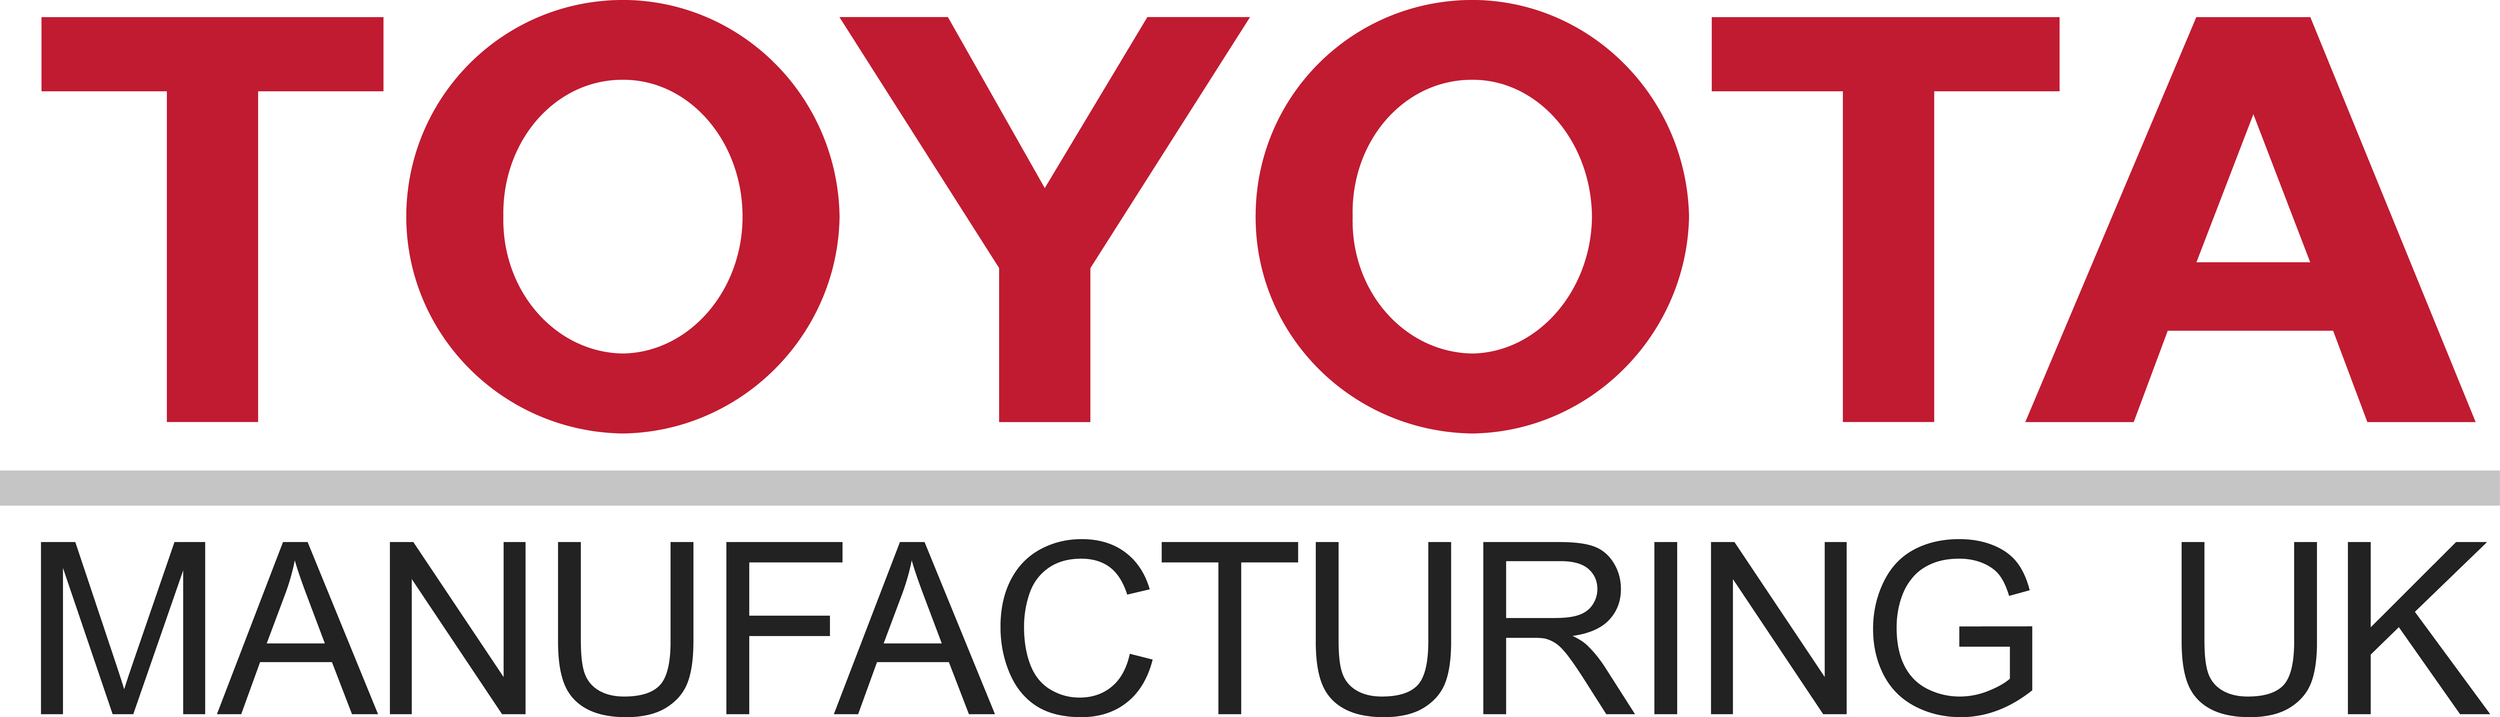 Toyota_Manufacturing_UK_Logo.jpg